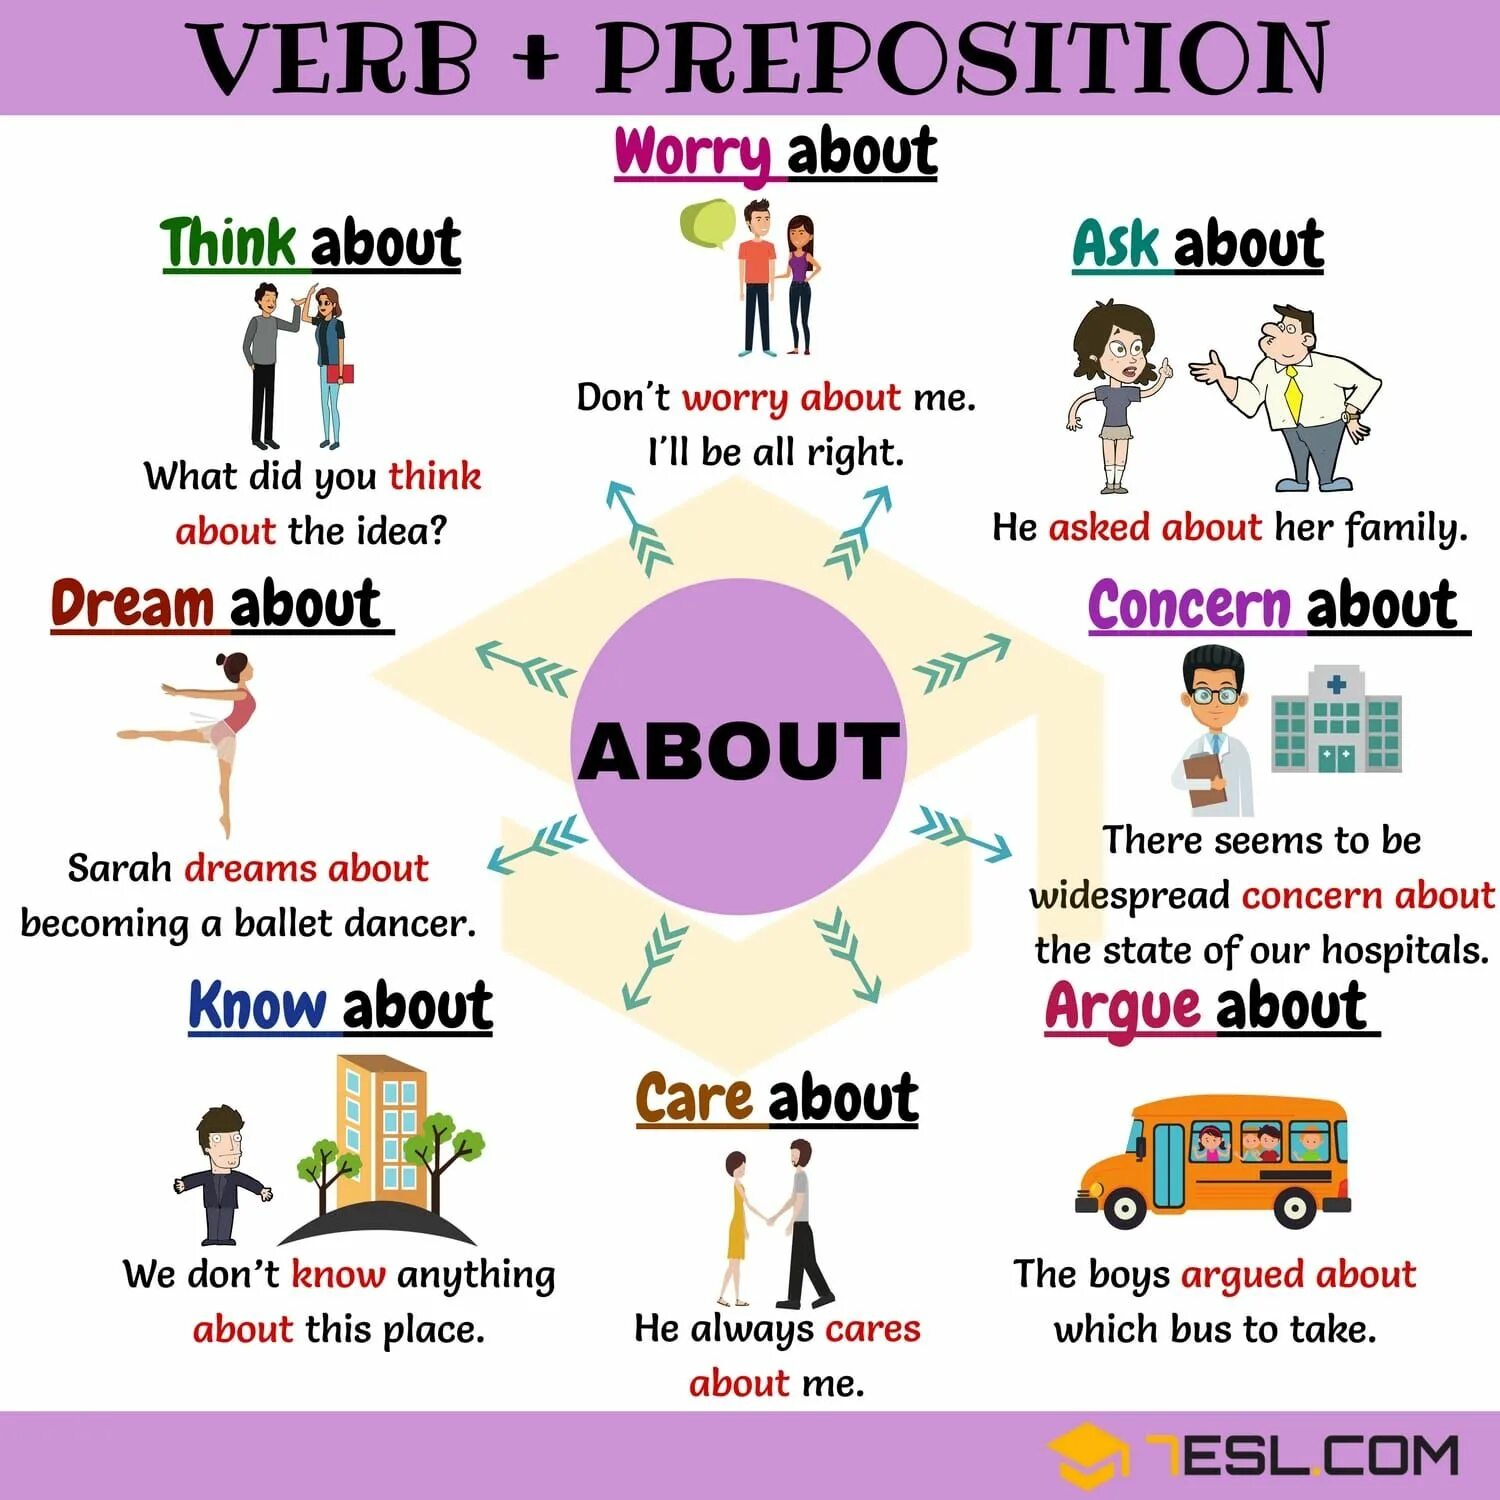 Prepositional verbs в английском языке. Verbs with prepositions в английском языке. About в английском языке. Prepositions в английском.